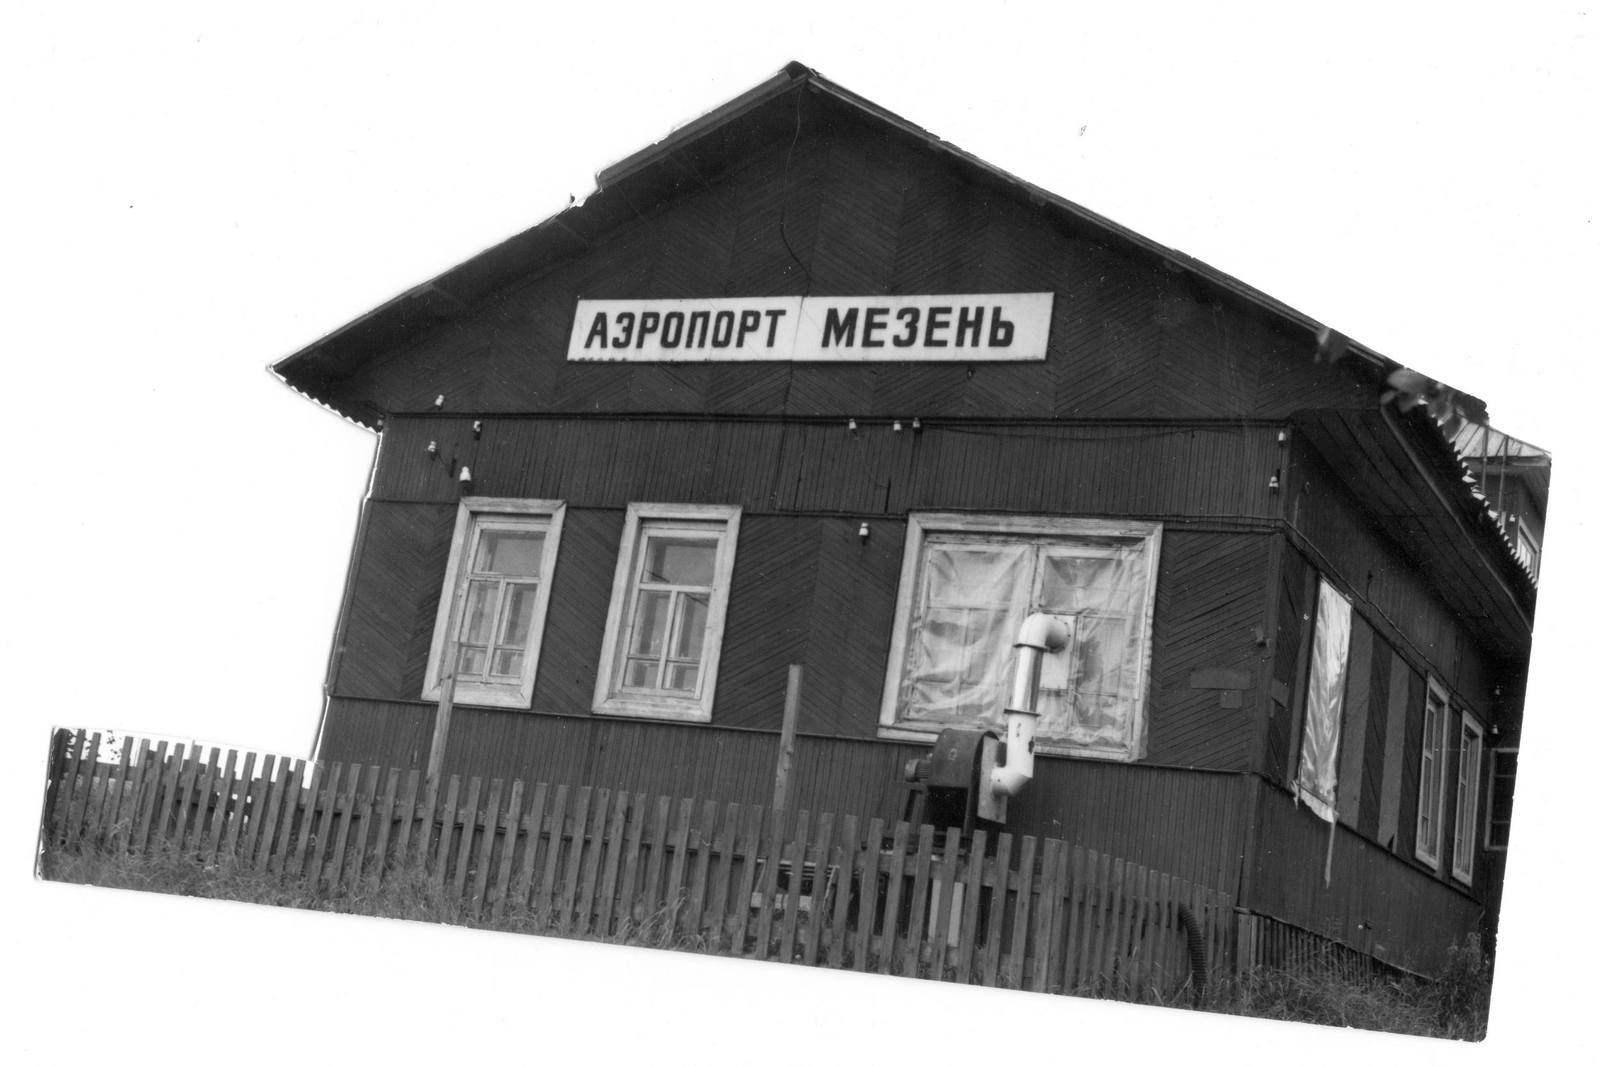 Mezen airport - My, Aviation, Arkhangelsk, Mezen, North, Stories, Longpost, Life stories